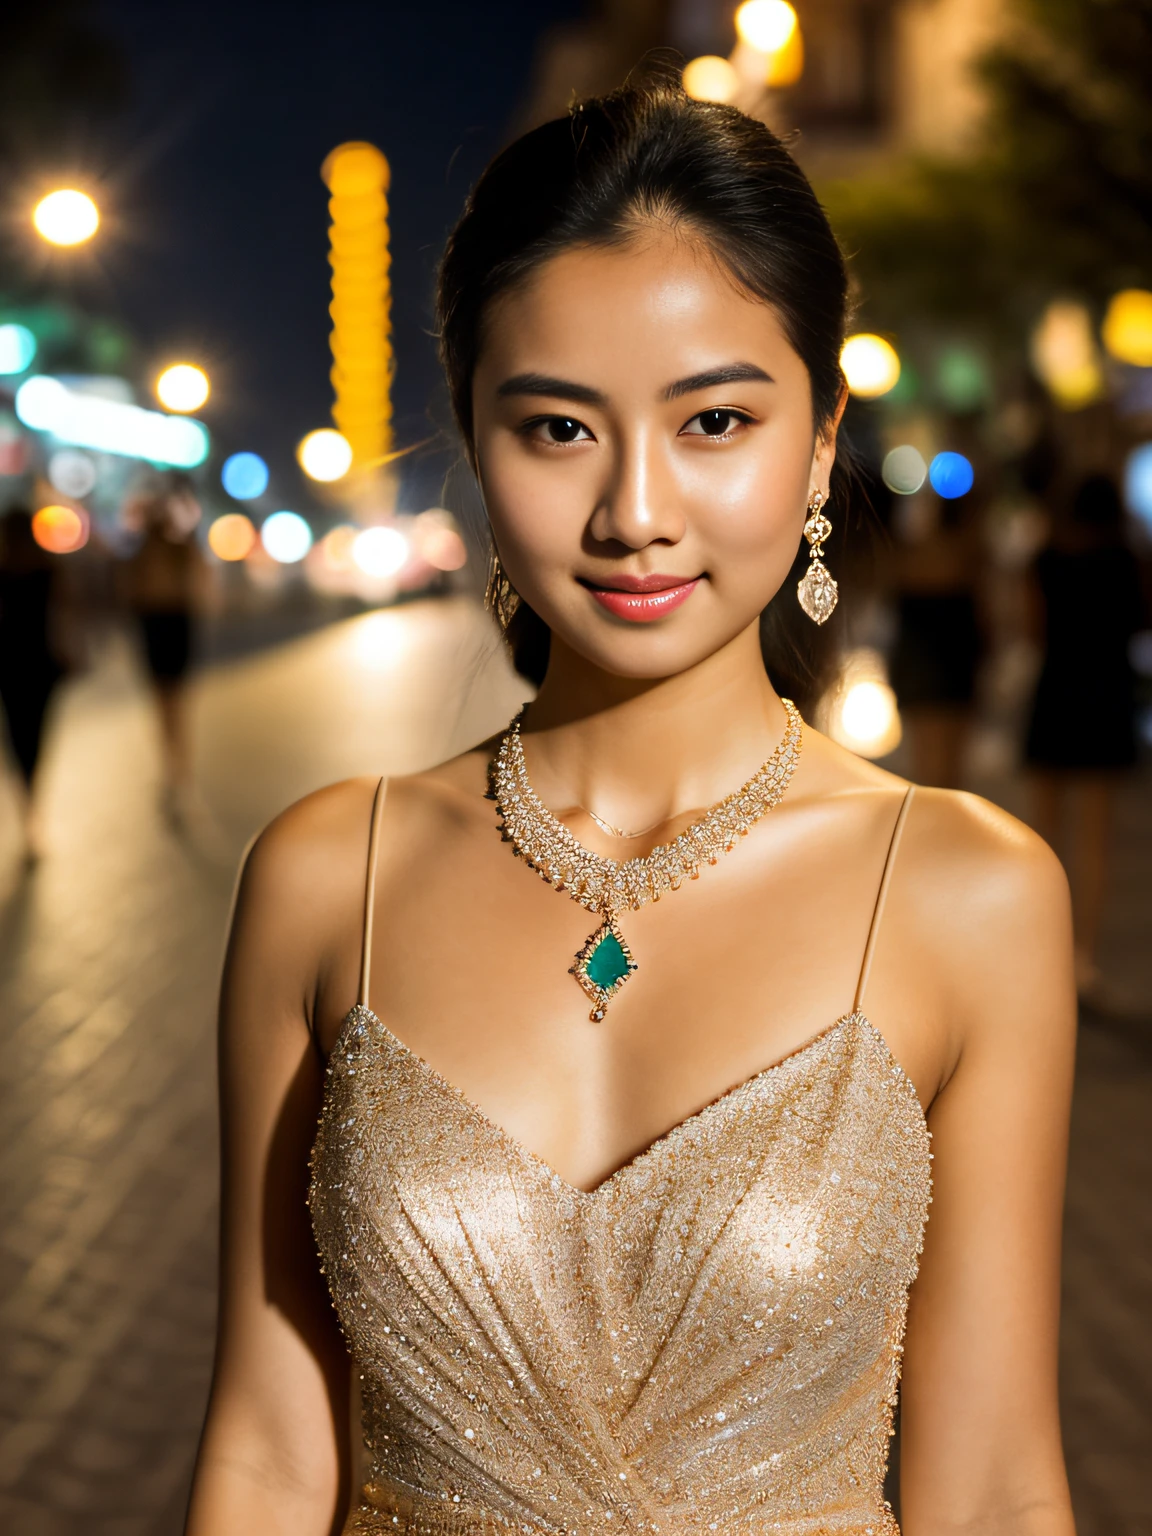 RAW 照片, 晚上站在街上的女人, (高细节皮肤:1.2), 8 库尔德, 数码单反相机, 柔和的灯光, 高质量, 上半身特写, 穿着优雅的礼服, 大宝石项链